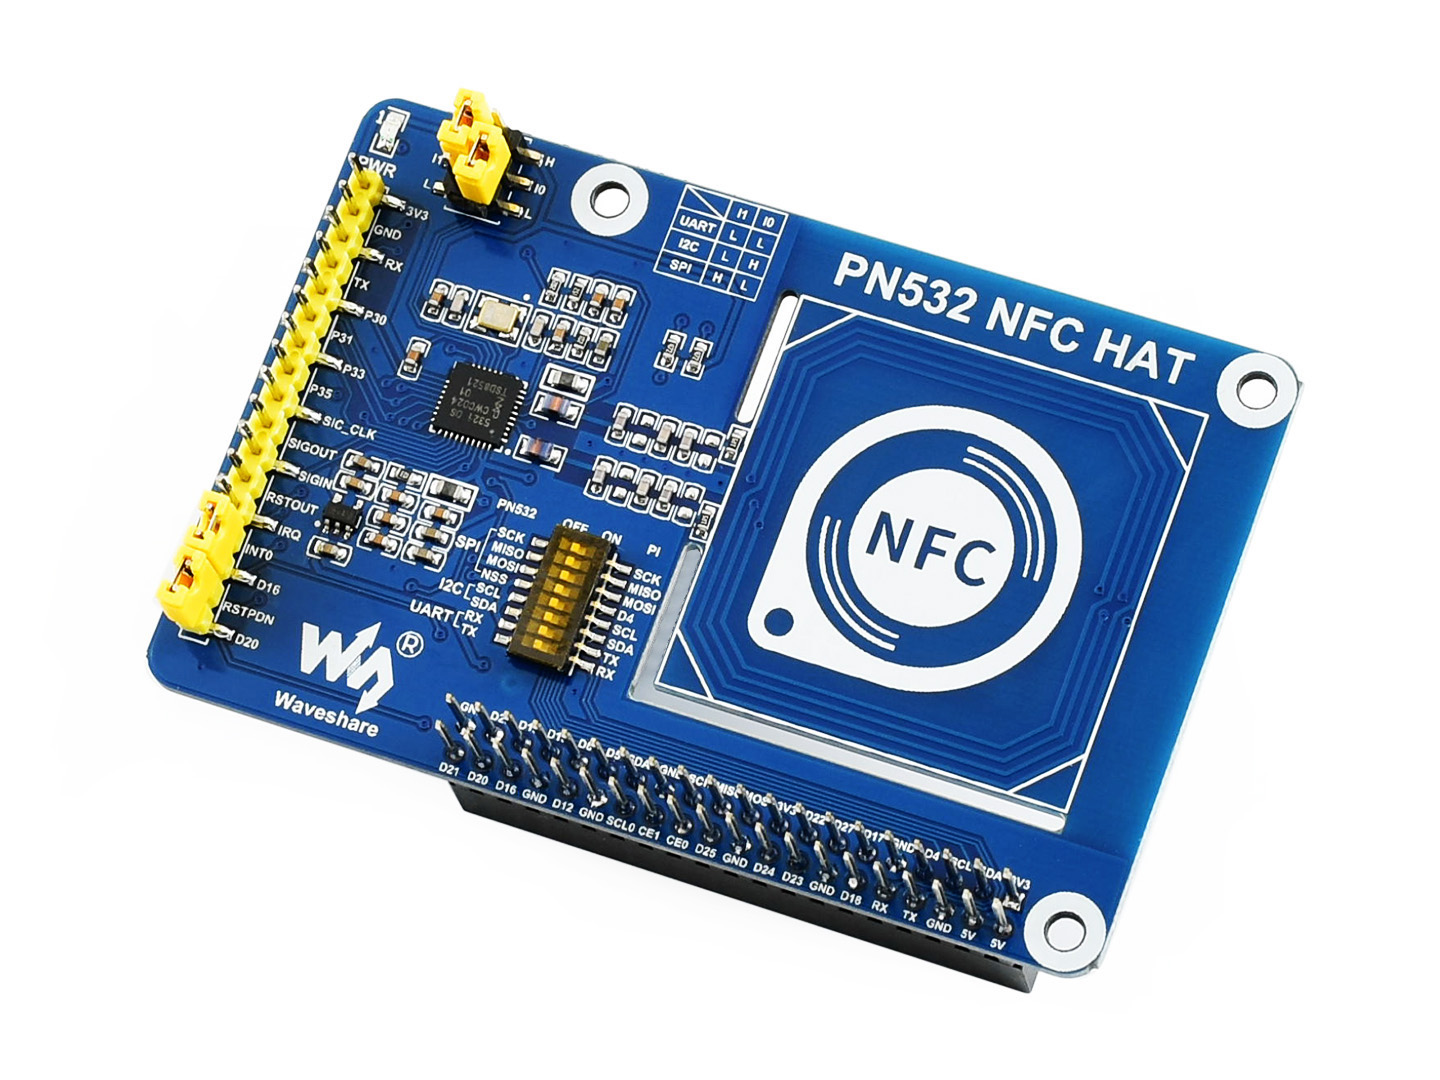 微雪电子PN532 NFC HAT树莓派NFC扩展板简介